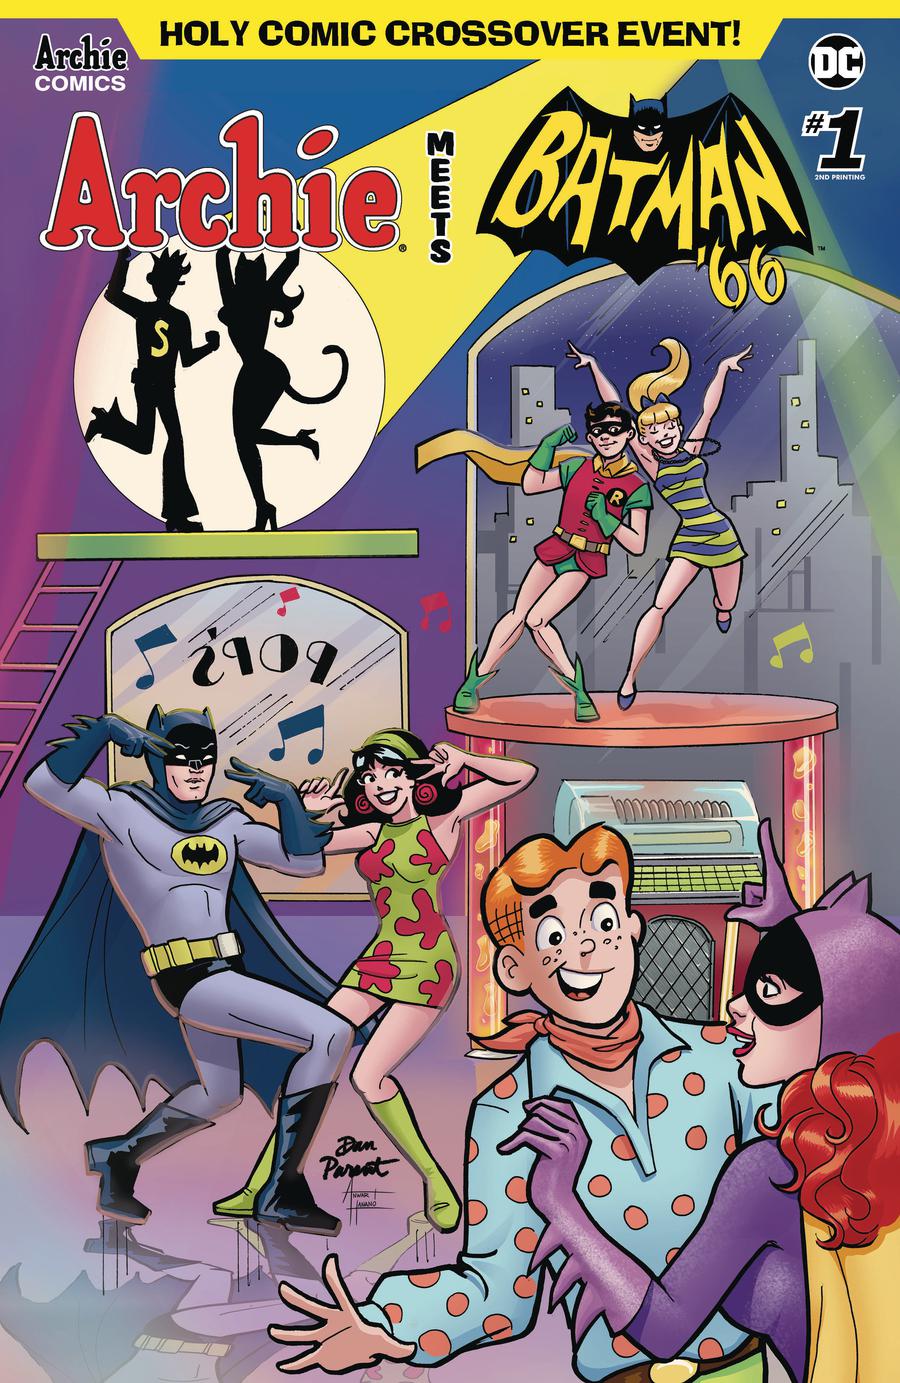 Archie Meets Batman 66 #1 Cover G 2nd Ptg Dan Parent Cover